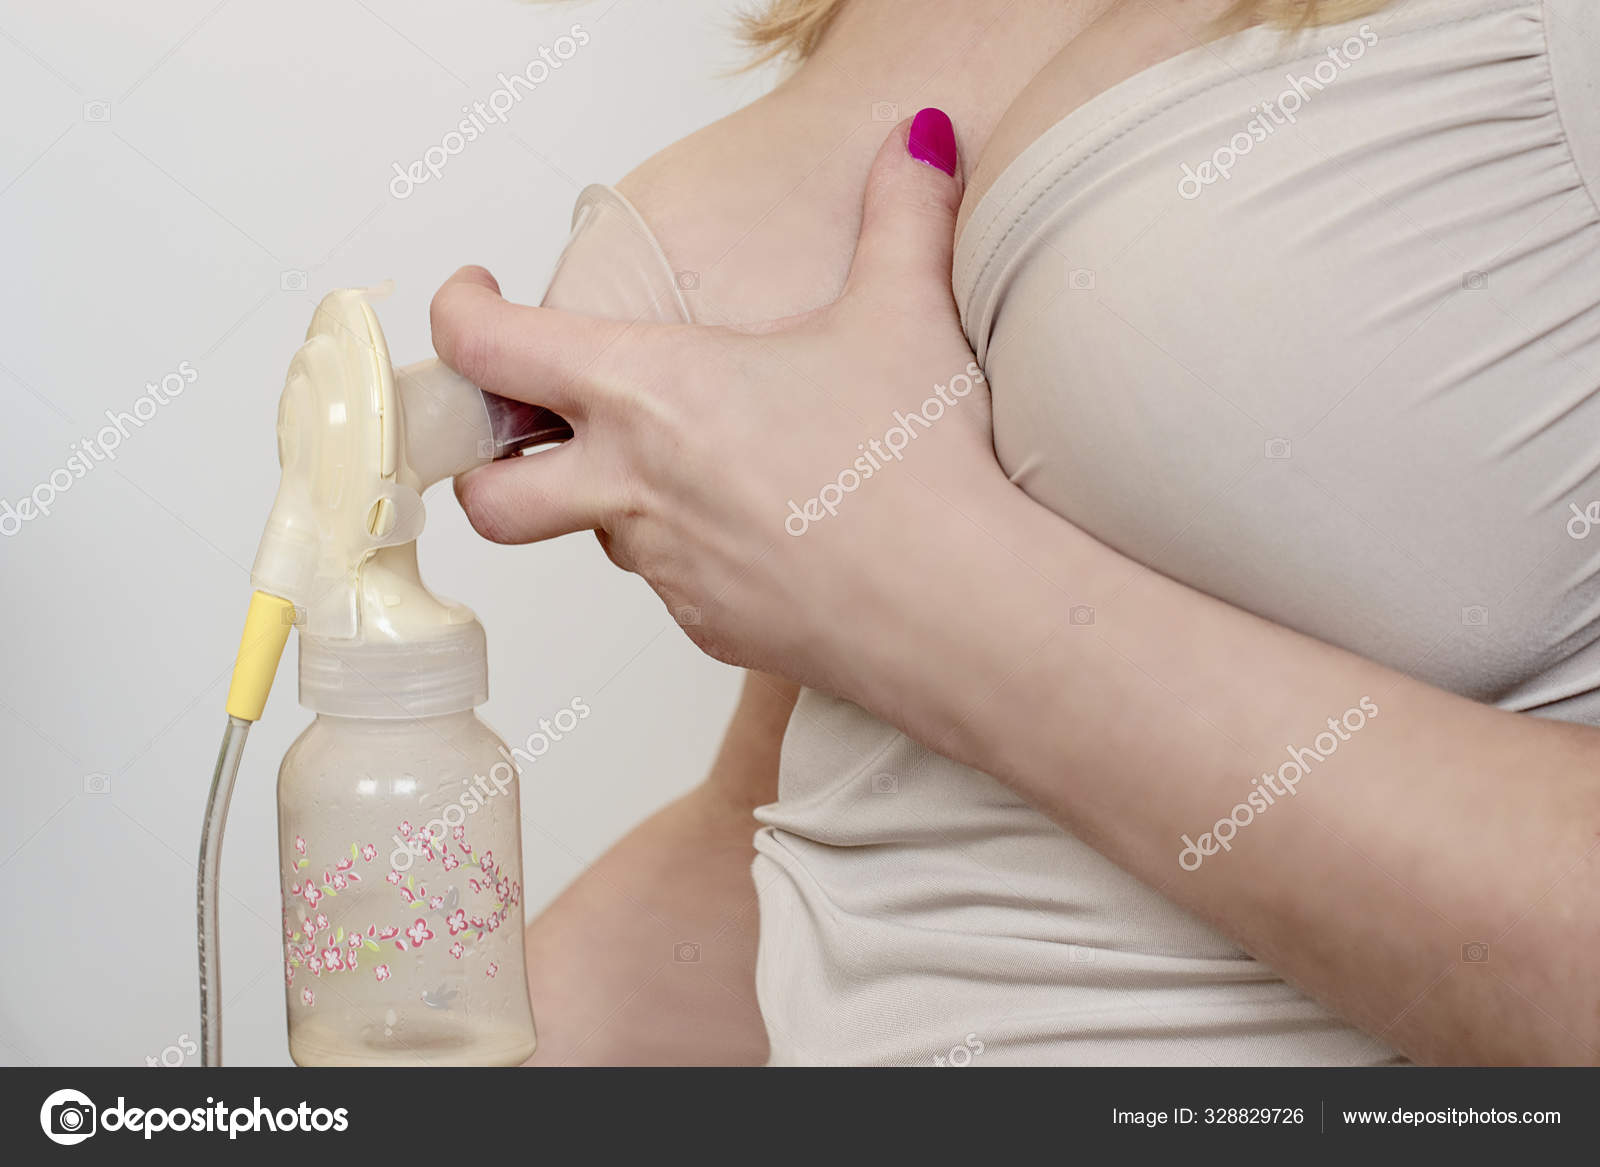 жидкость из груди при надавливании при беременности фото 117